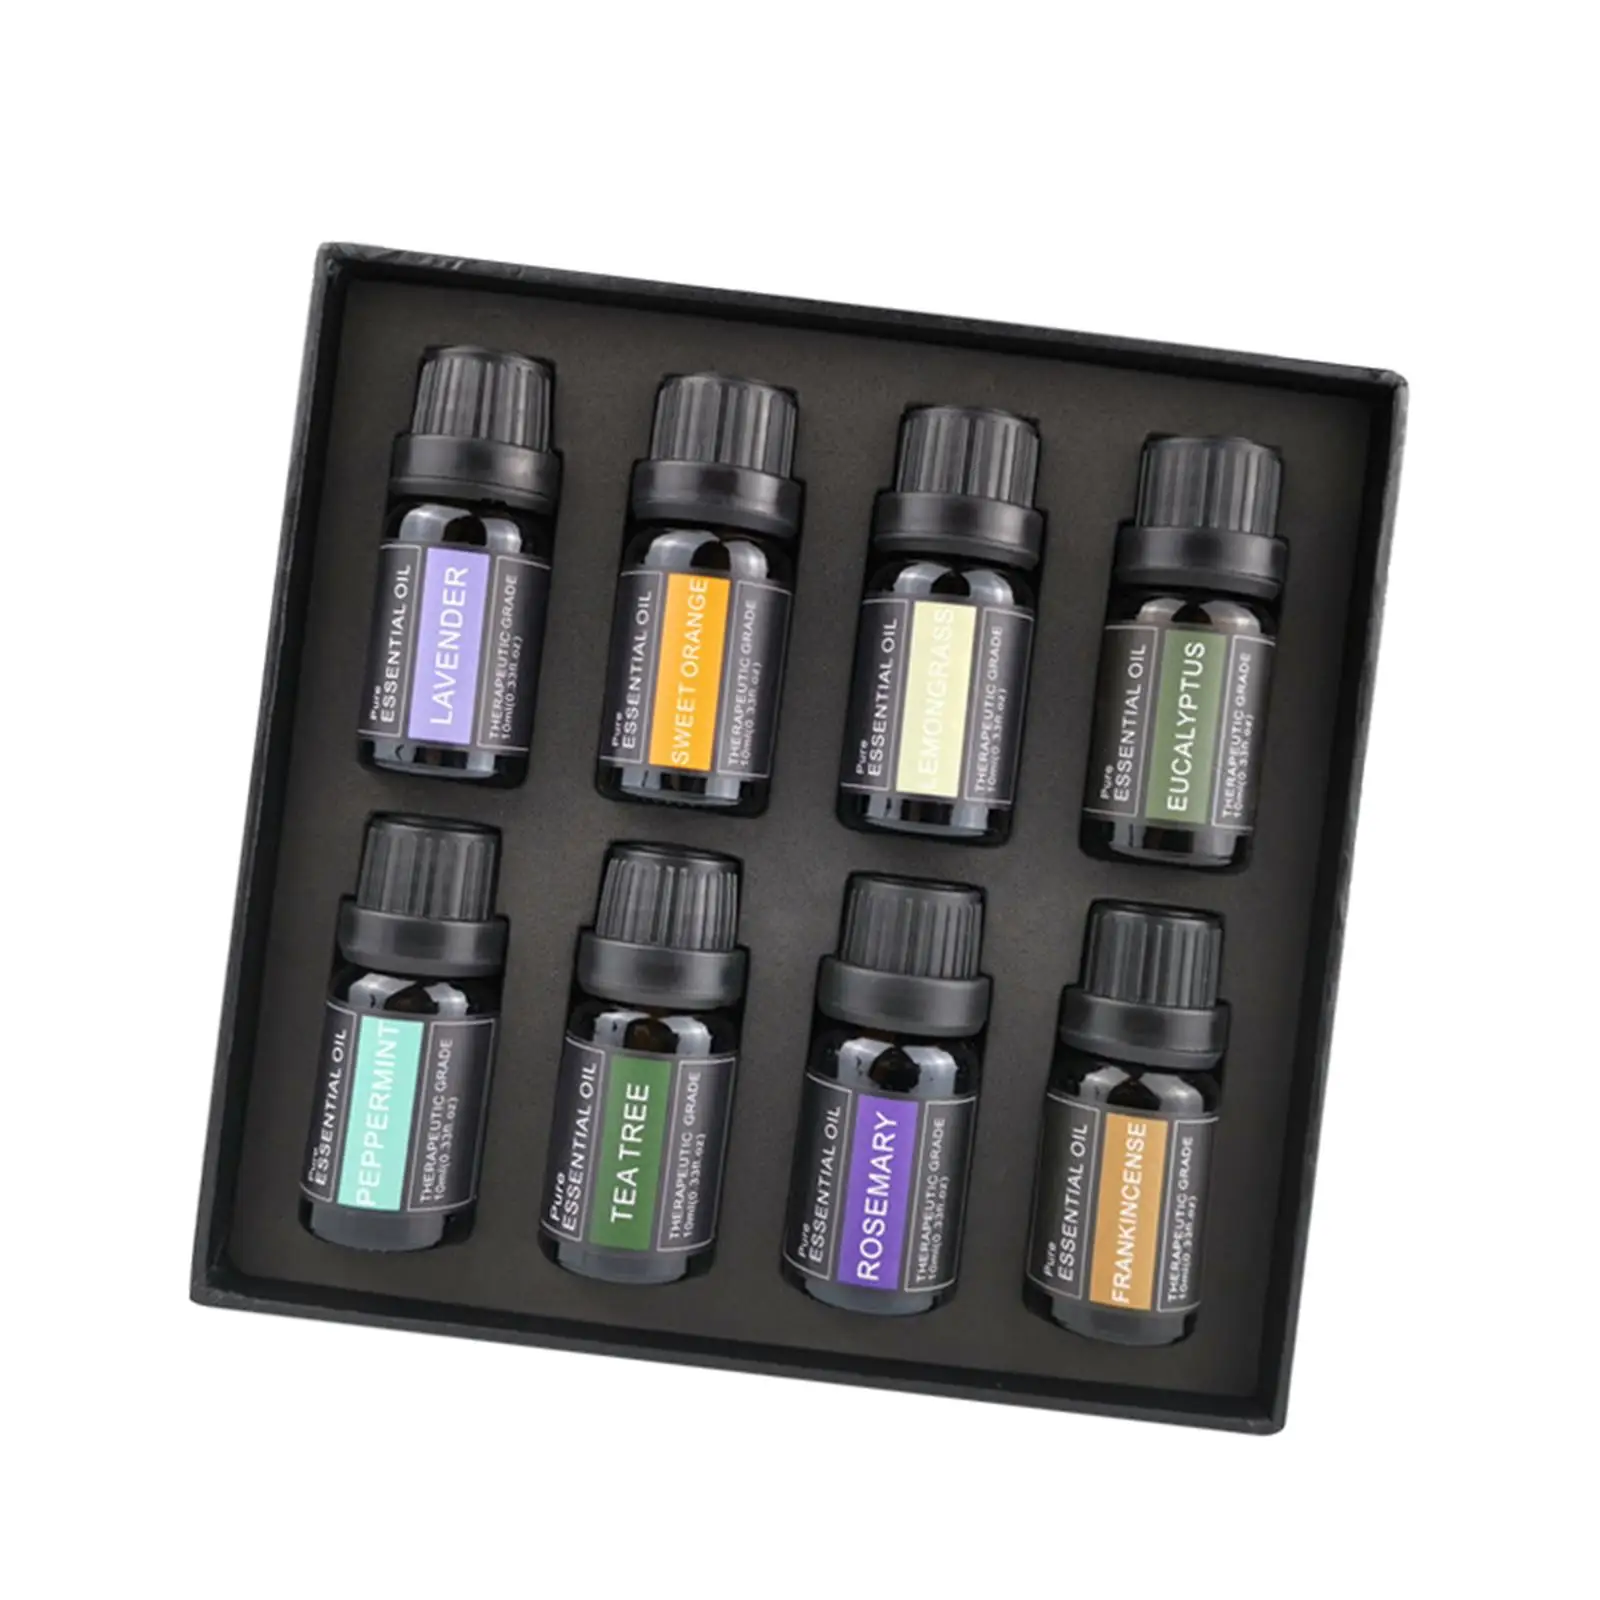 Premium Aromatherapy Oils Gift Kit 10ml(1/3 oz) Lemon Essential Oil Set for Home